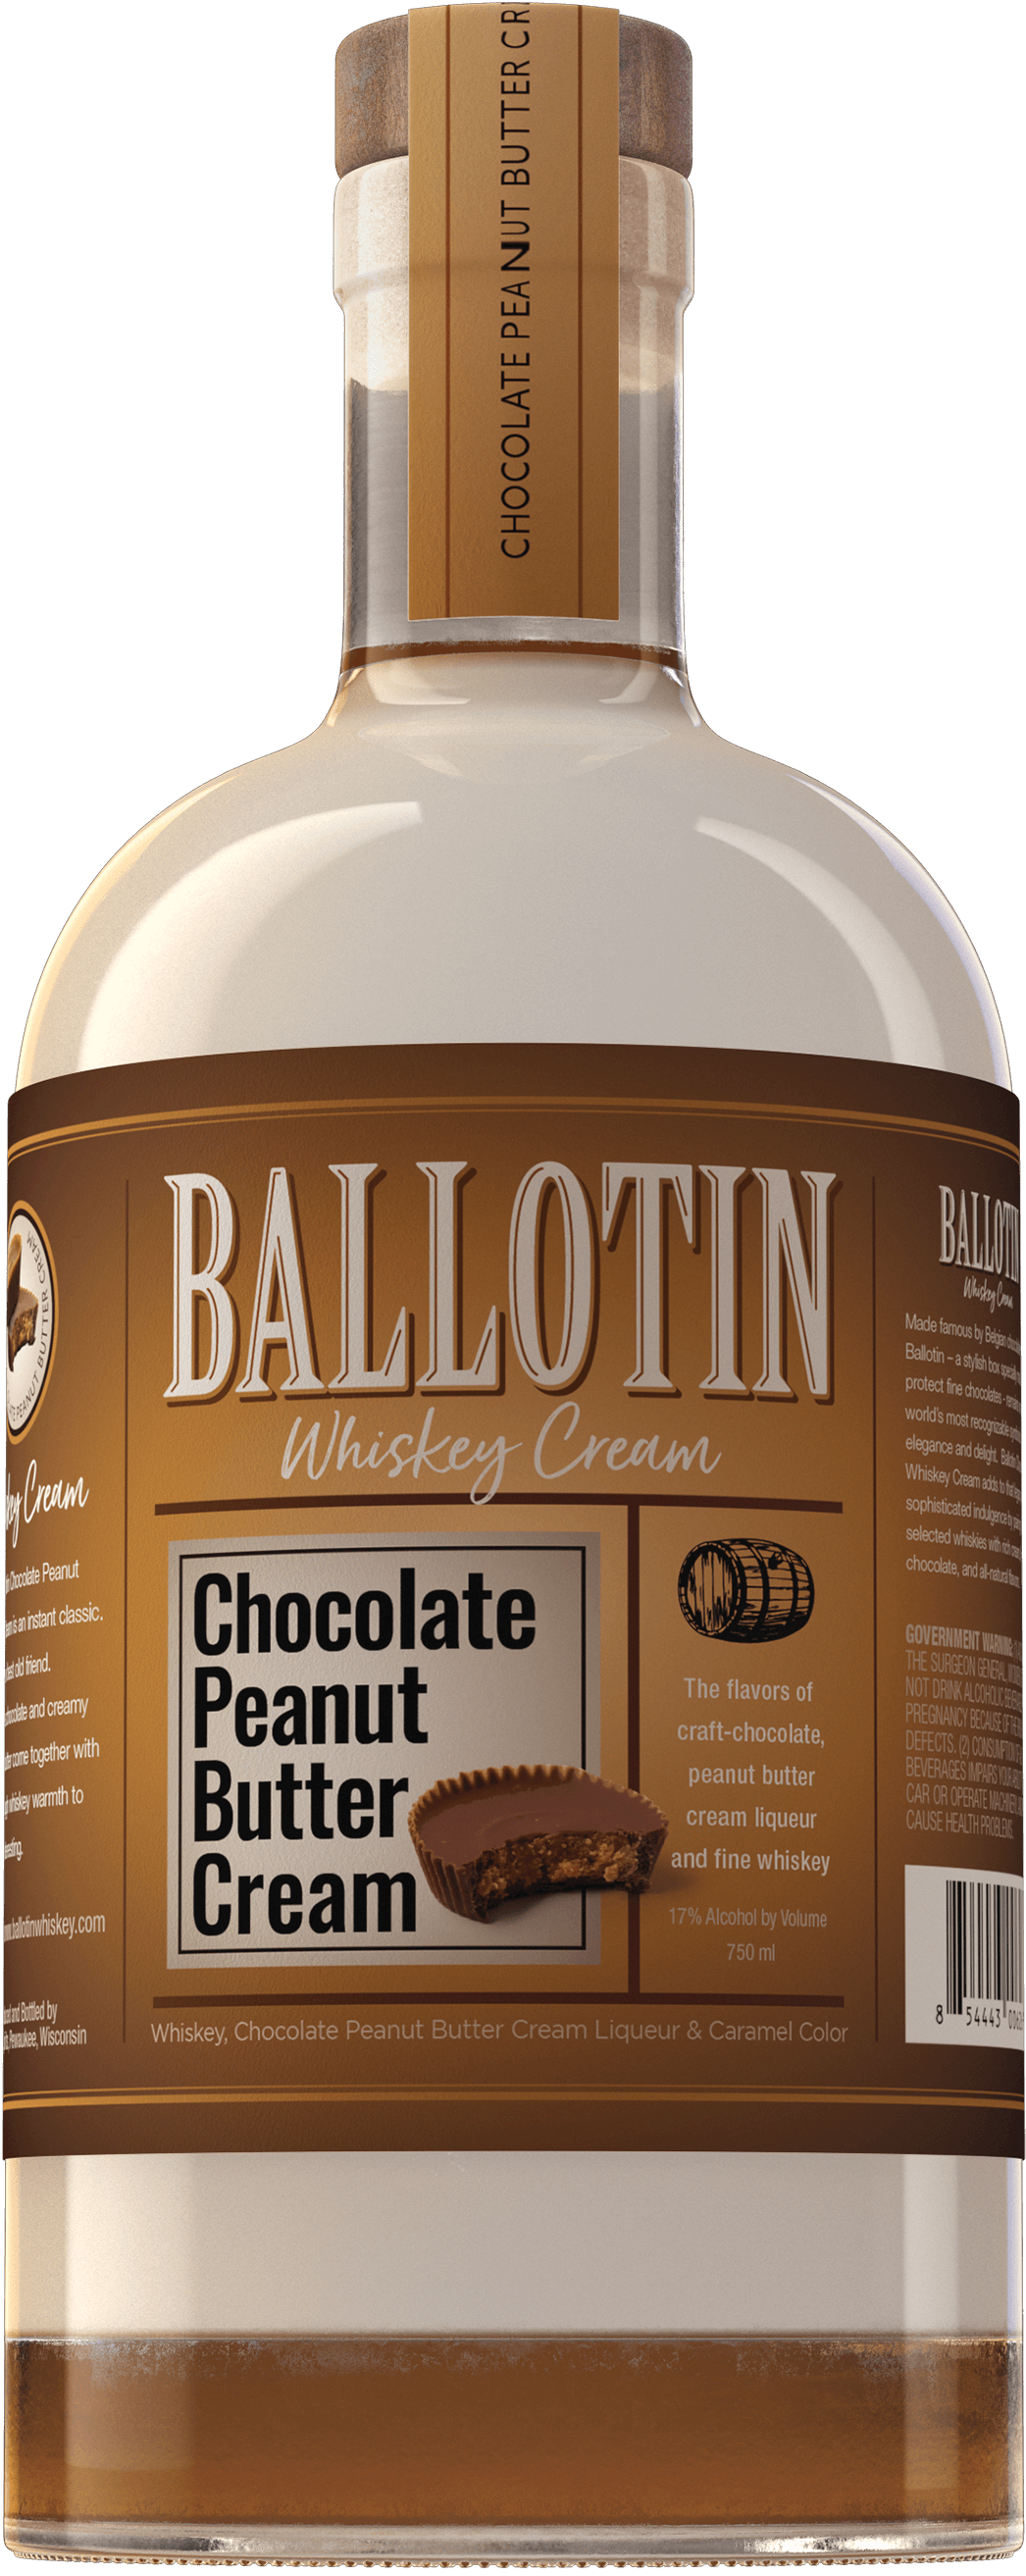 http://ballotinwhiskey.com/cdn/shop/files/Ballotin-Chocolate-Peanut-Butter-Cream-750ml-Bottle-Image.png?v=1692042764